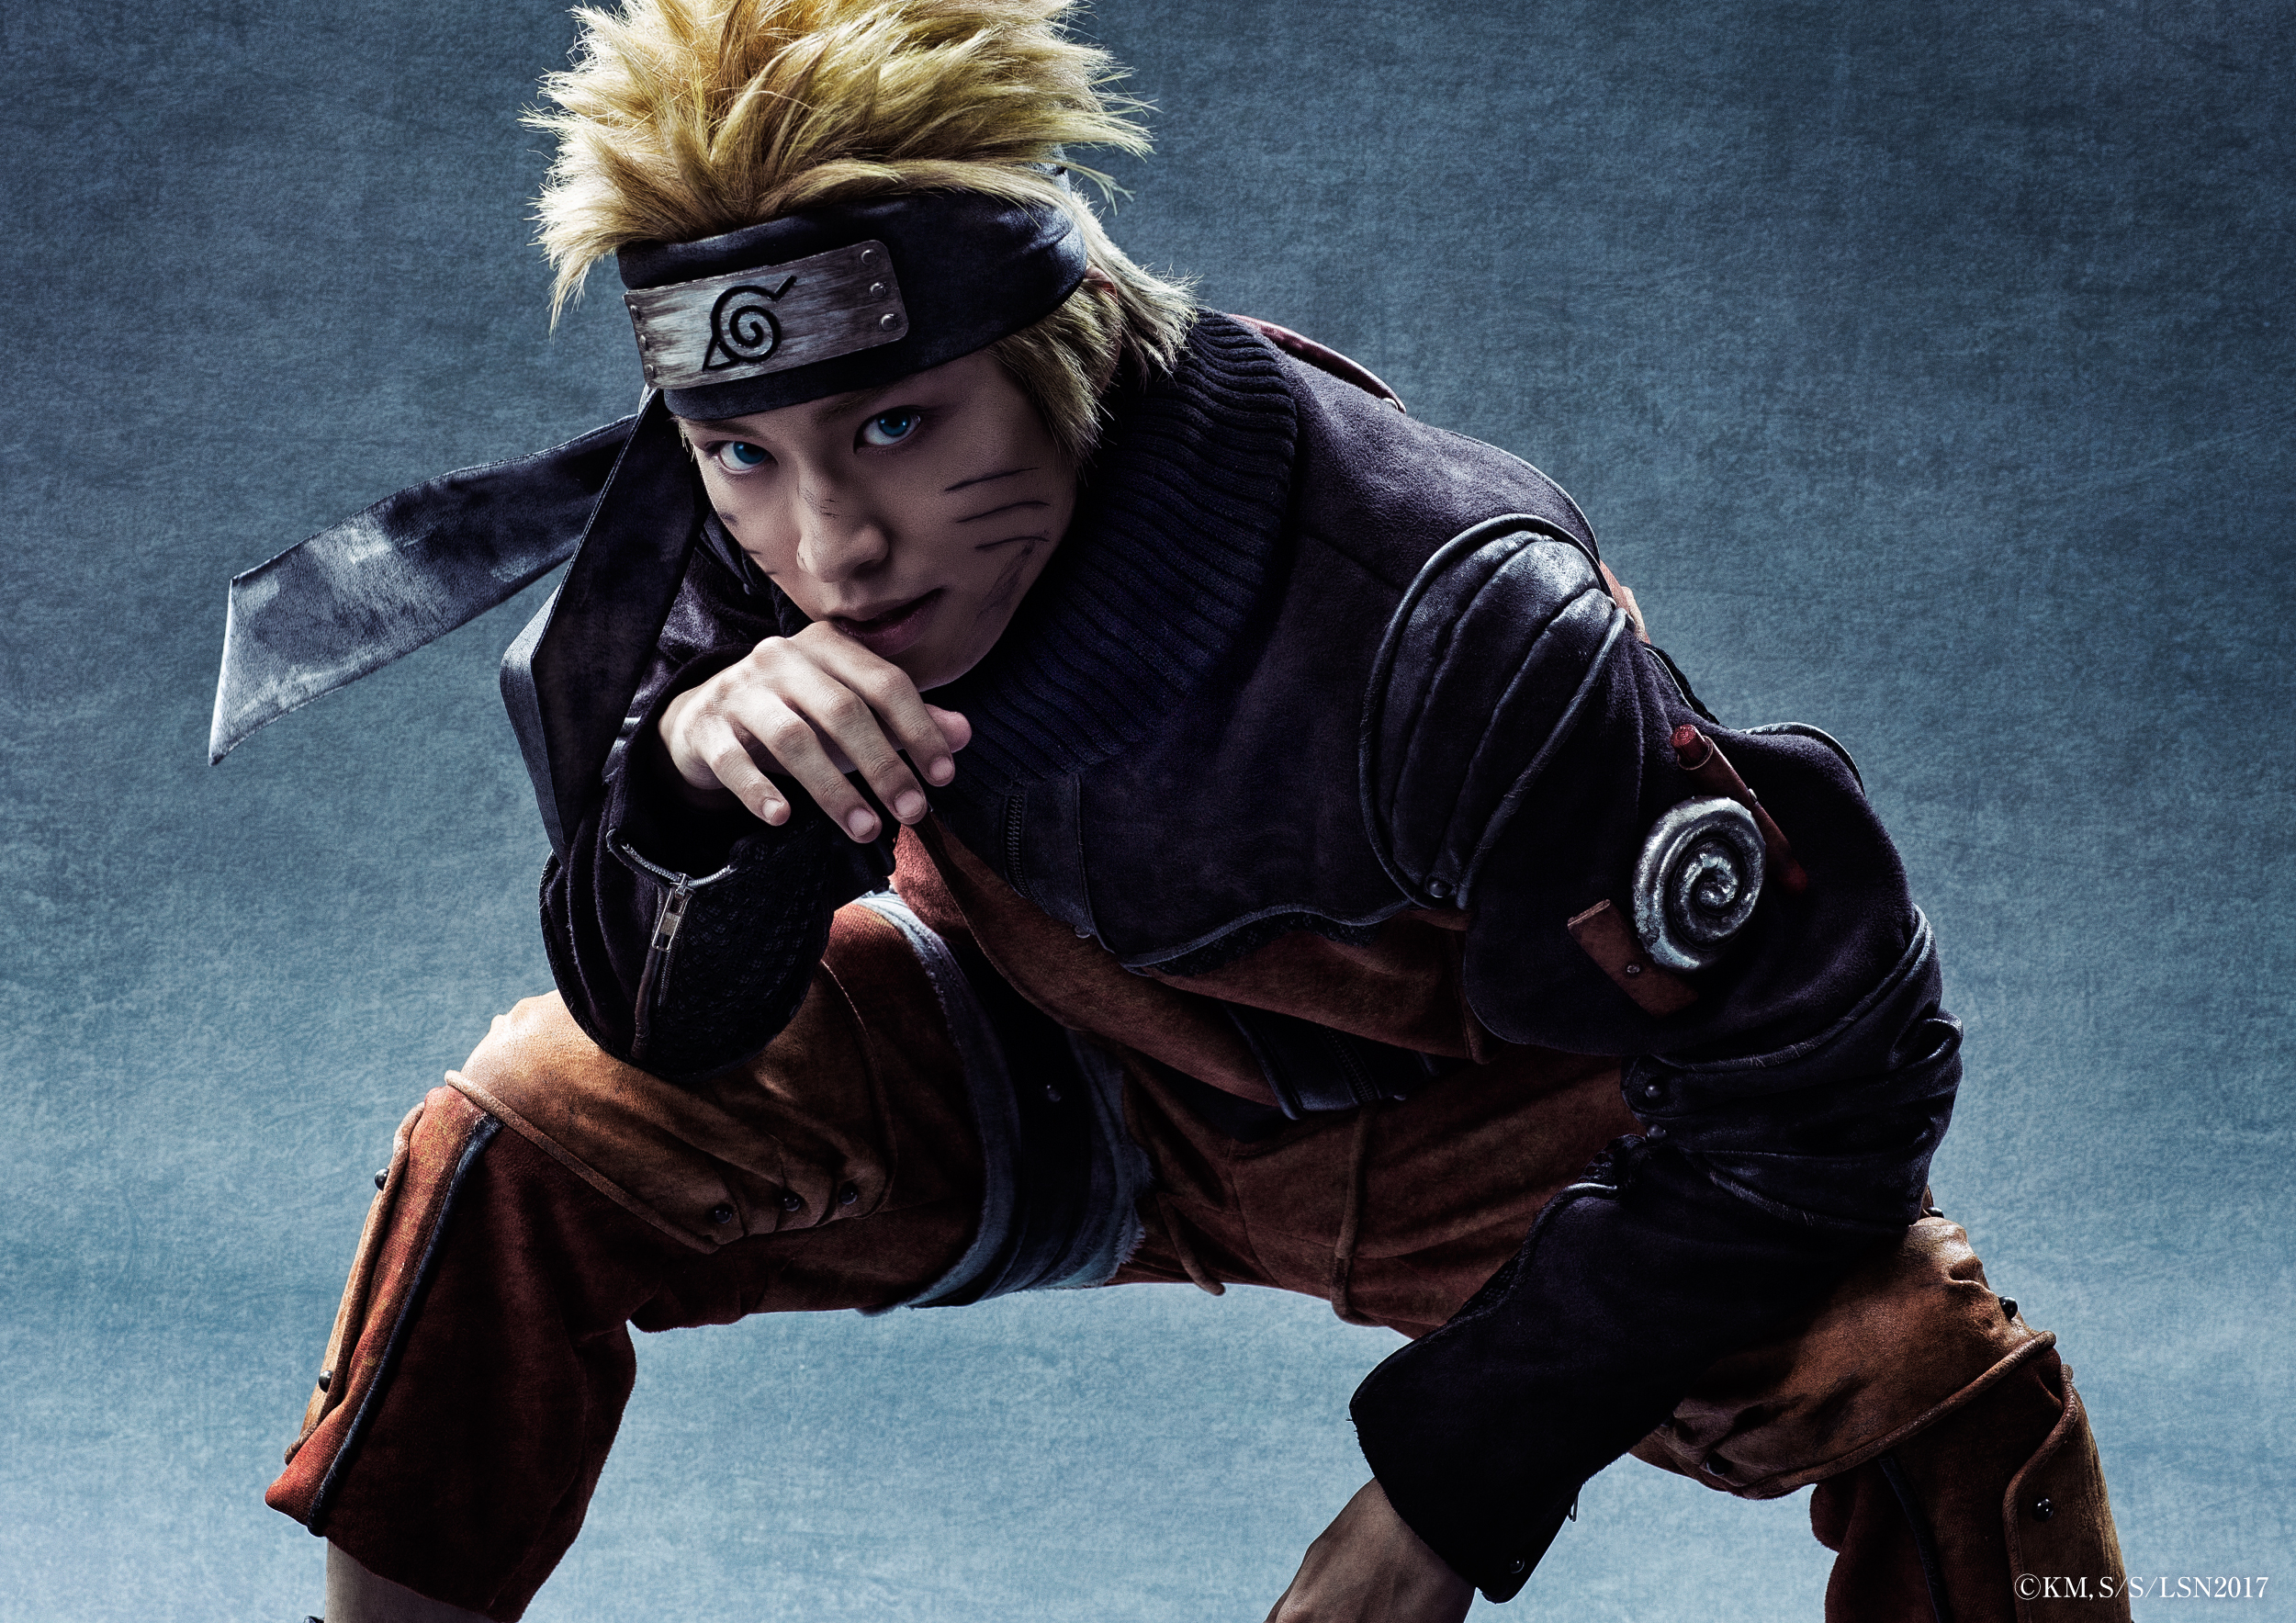 Finalmente Naruto vai ganhar adaptação em Live-Action para os cinemas.